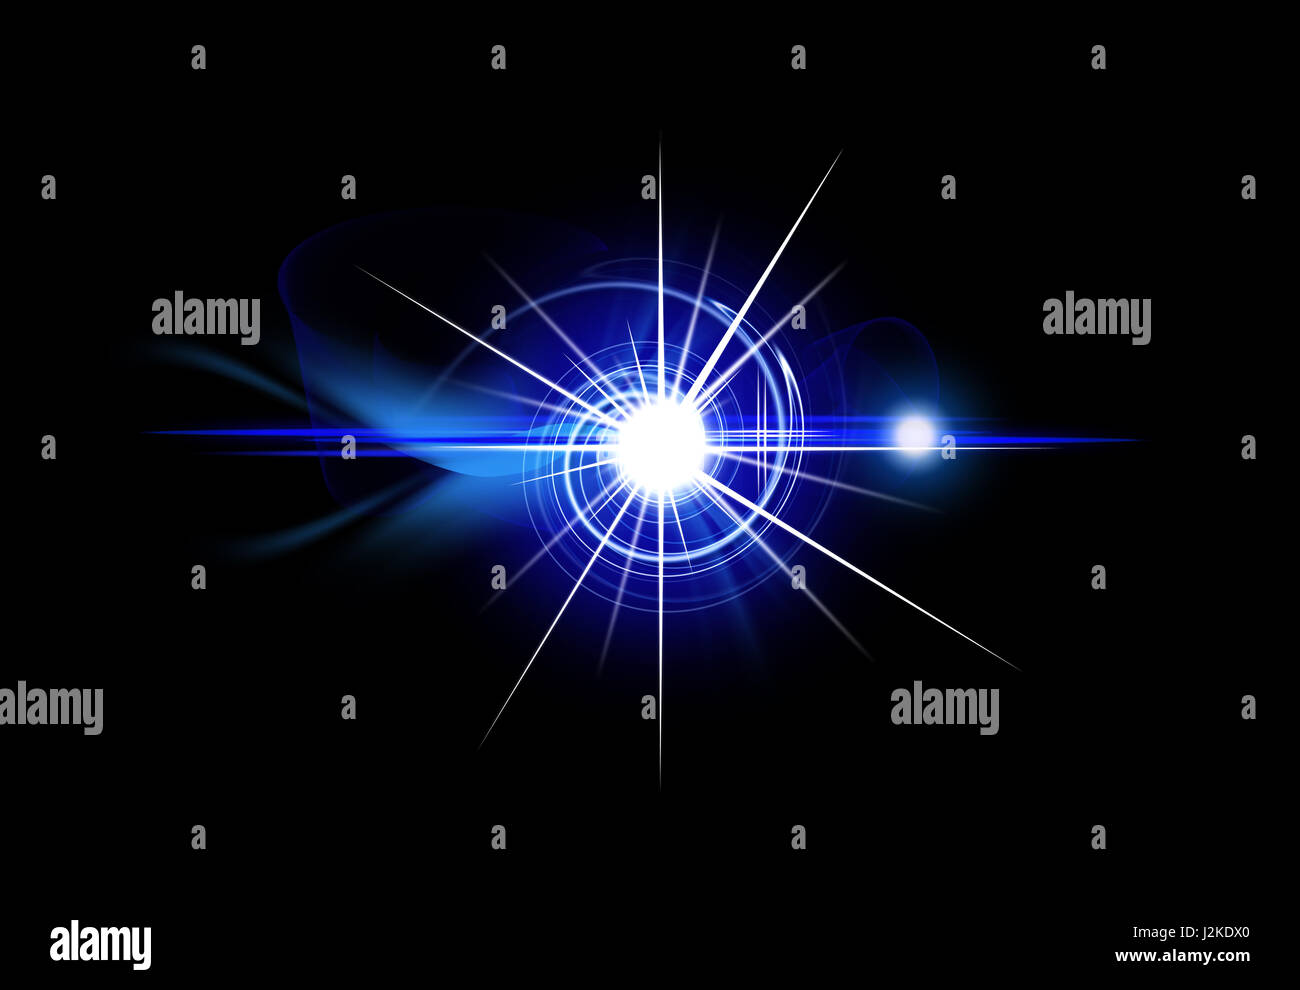 Star effetto immagini e fotografie stock ad alta risoluzione - Alamy